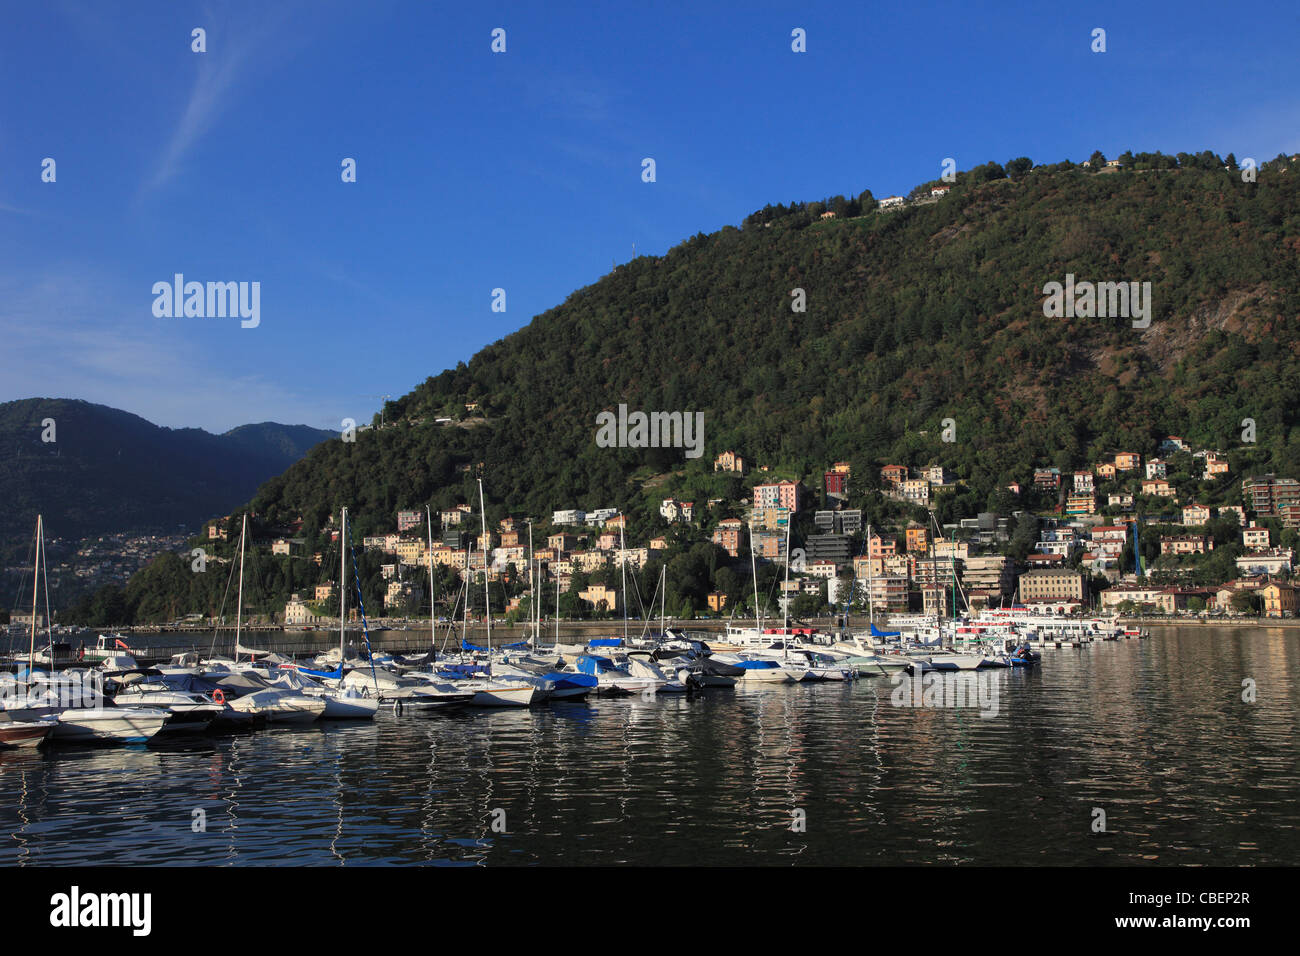 Italy, Lombardy, Como, lake, boats, Stock Photo